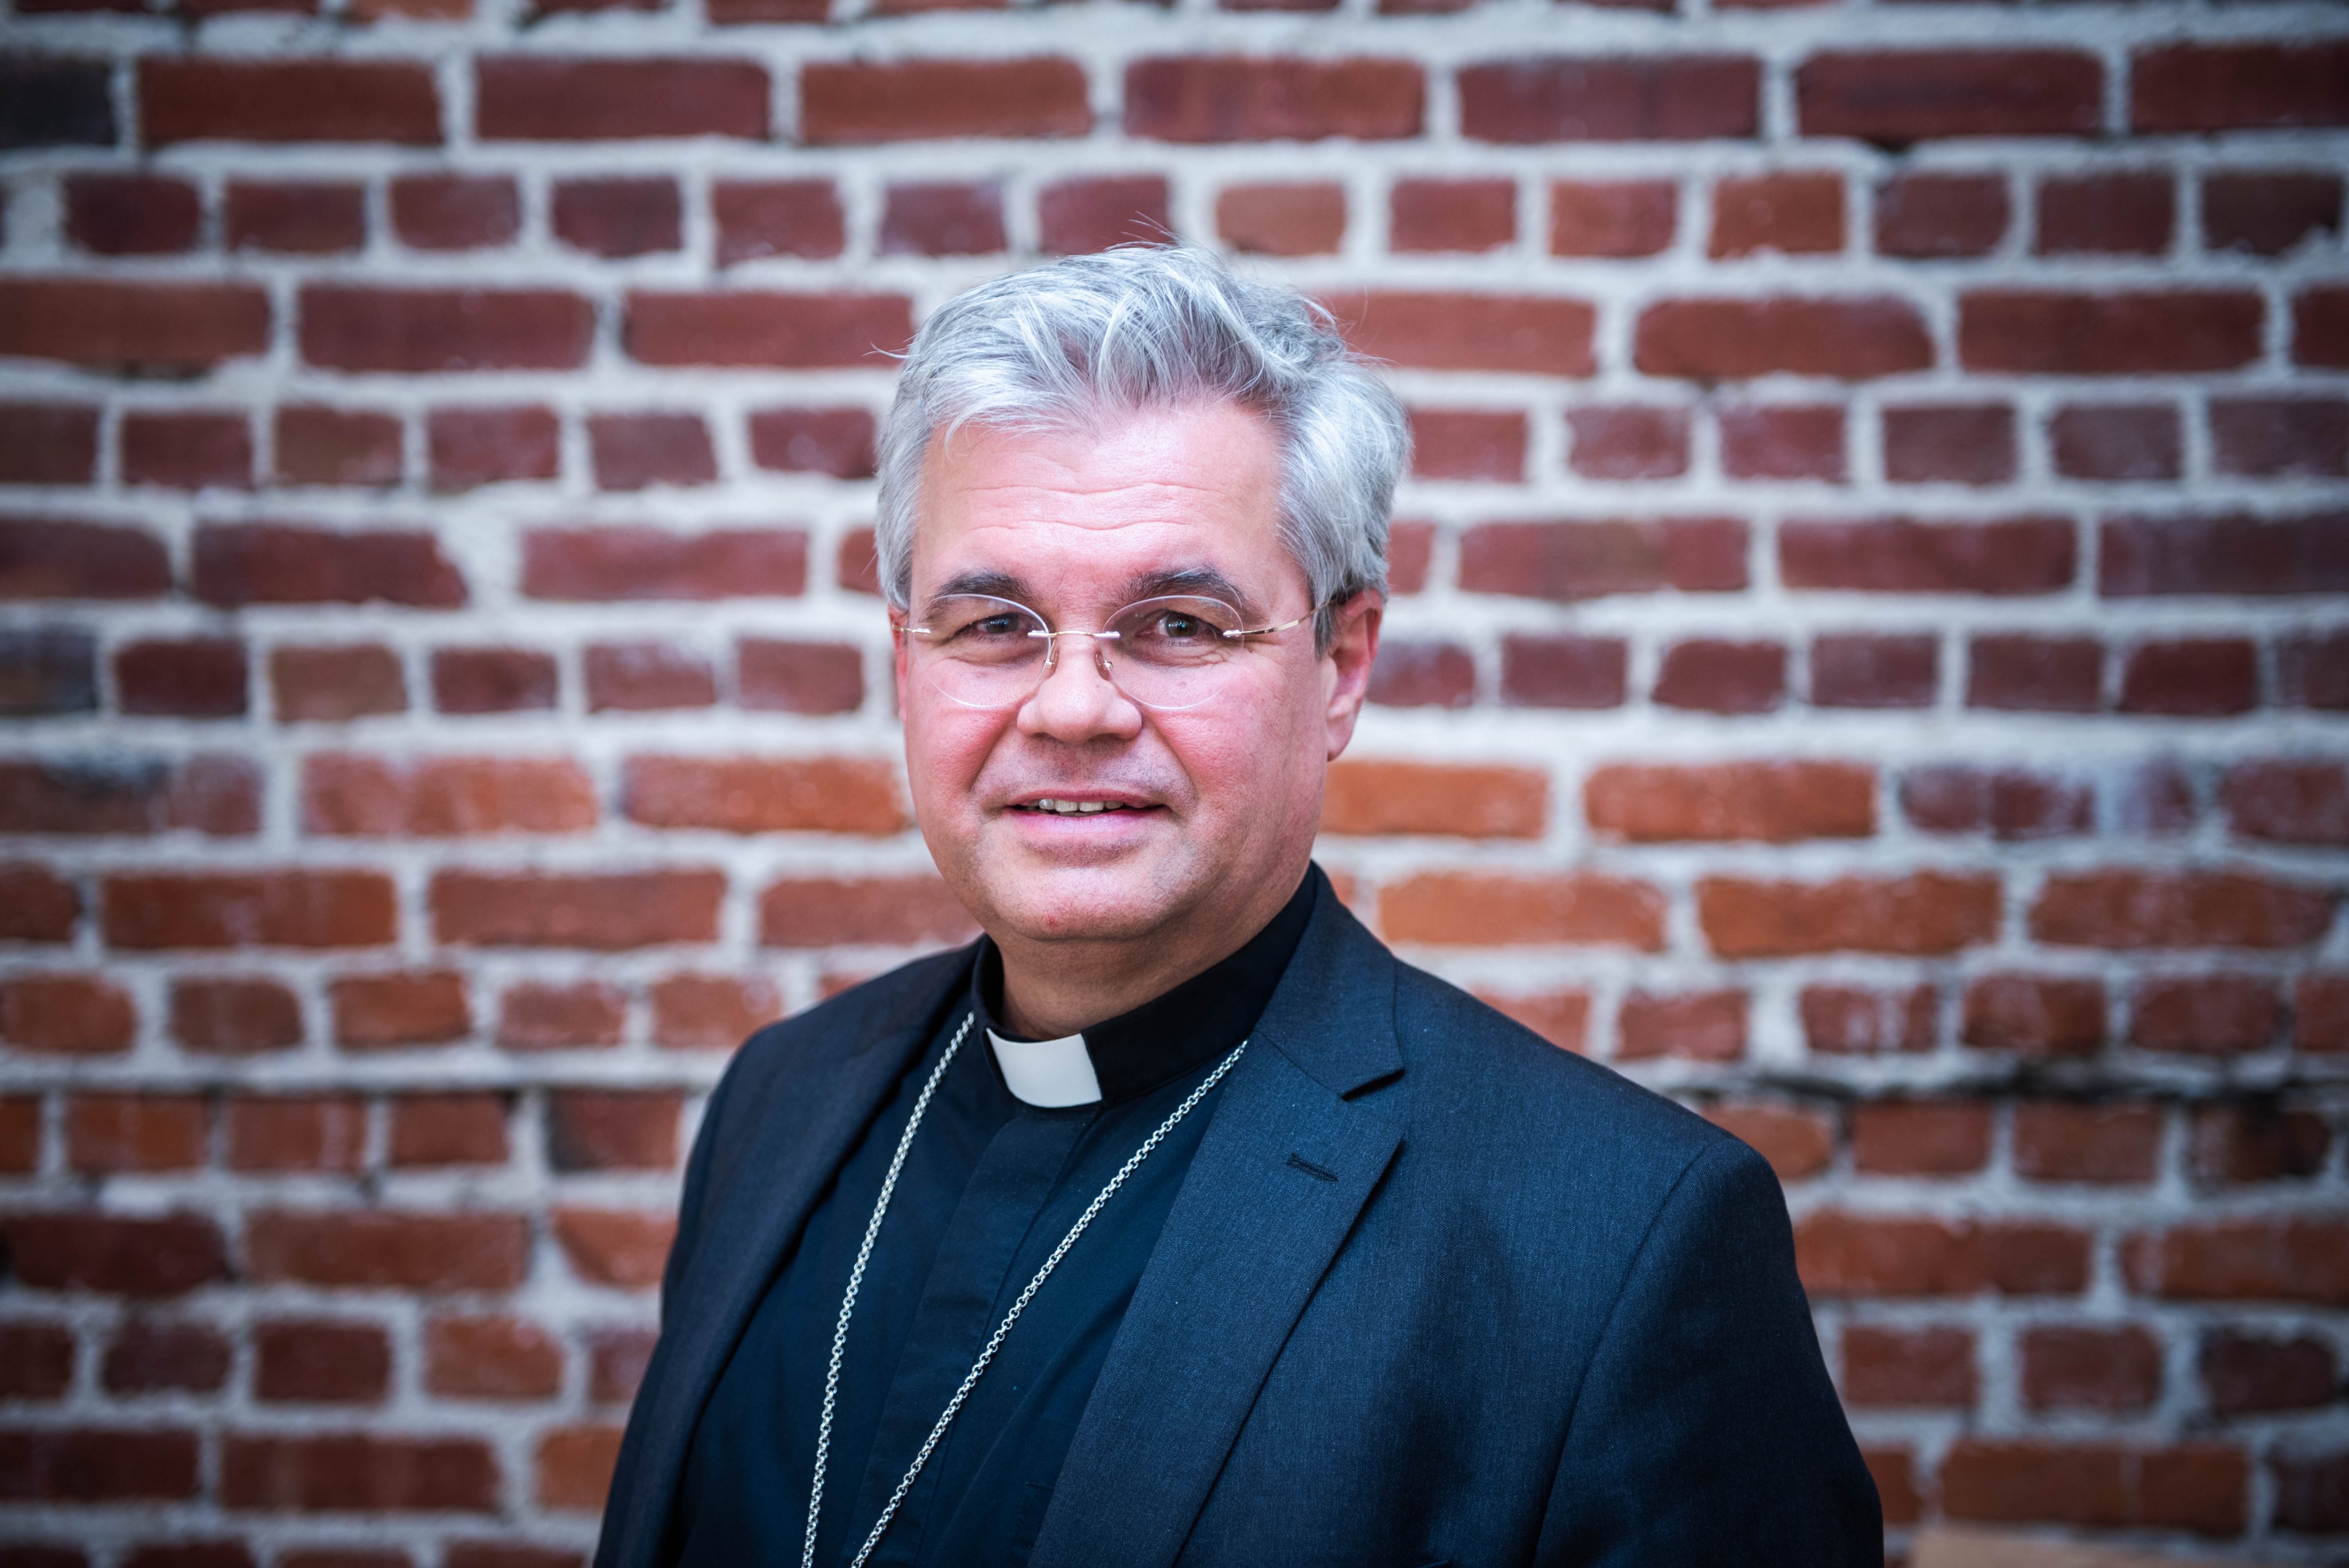 Erzbischof Dr. Udo Markus Bentz ist 57 Jahre alt. Die Priesterweihe empfing er am 1. Juli 1995. Am 9. Dezember 2023 ernannte ihn Papst Franziskus zum Erzbischof von Paderborn. Die Amtseinführung folgte am 10. März 2024. von Nils Dinkel